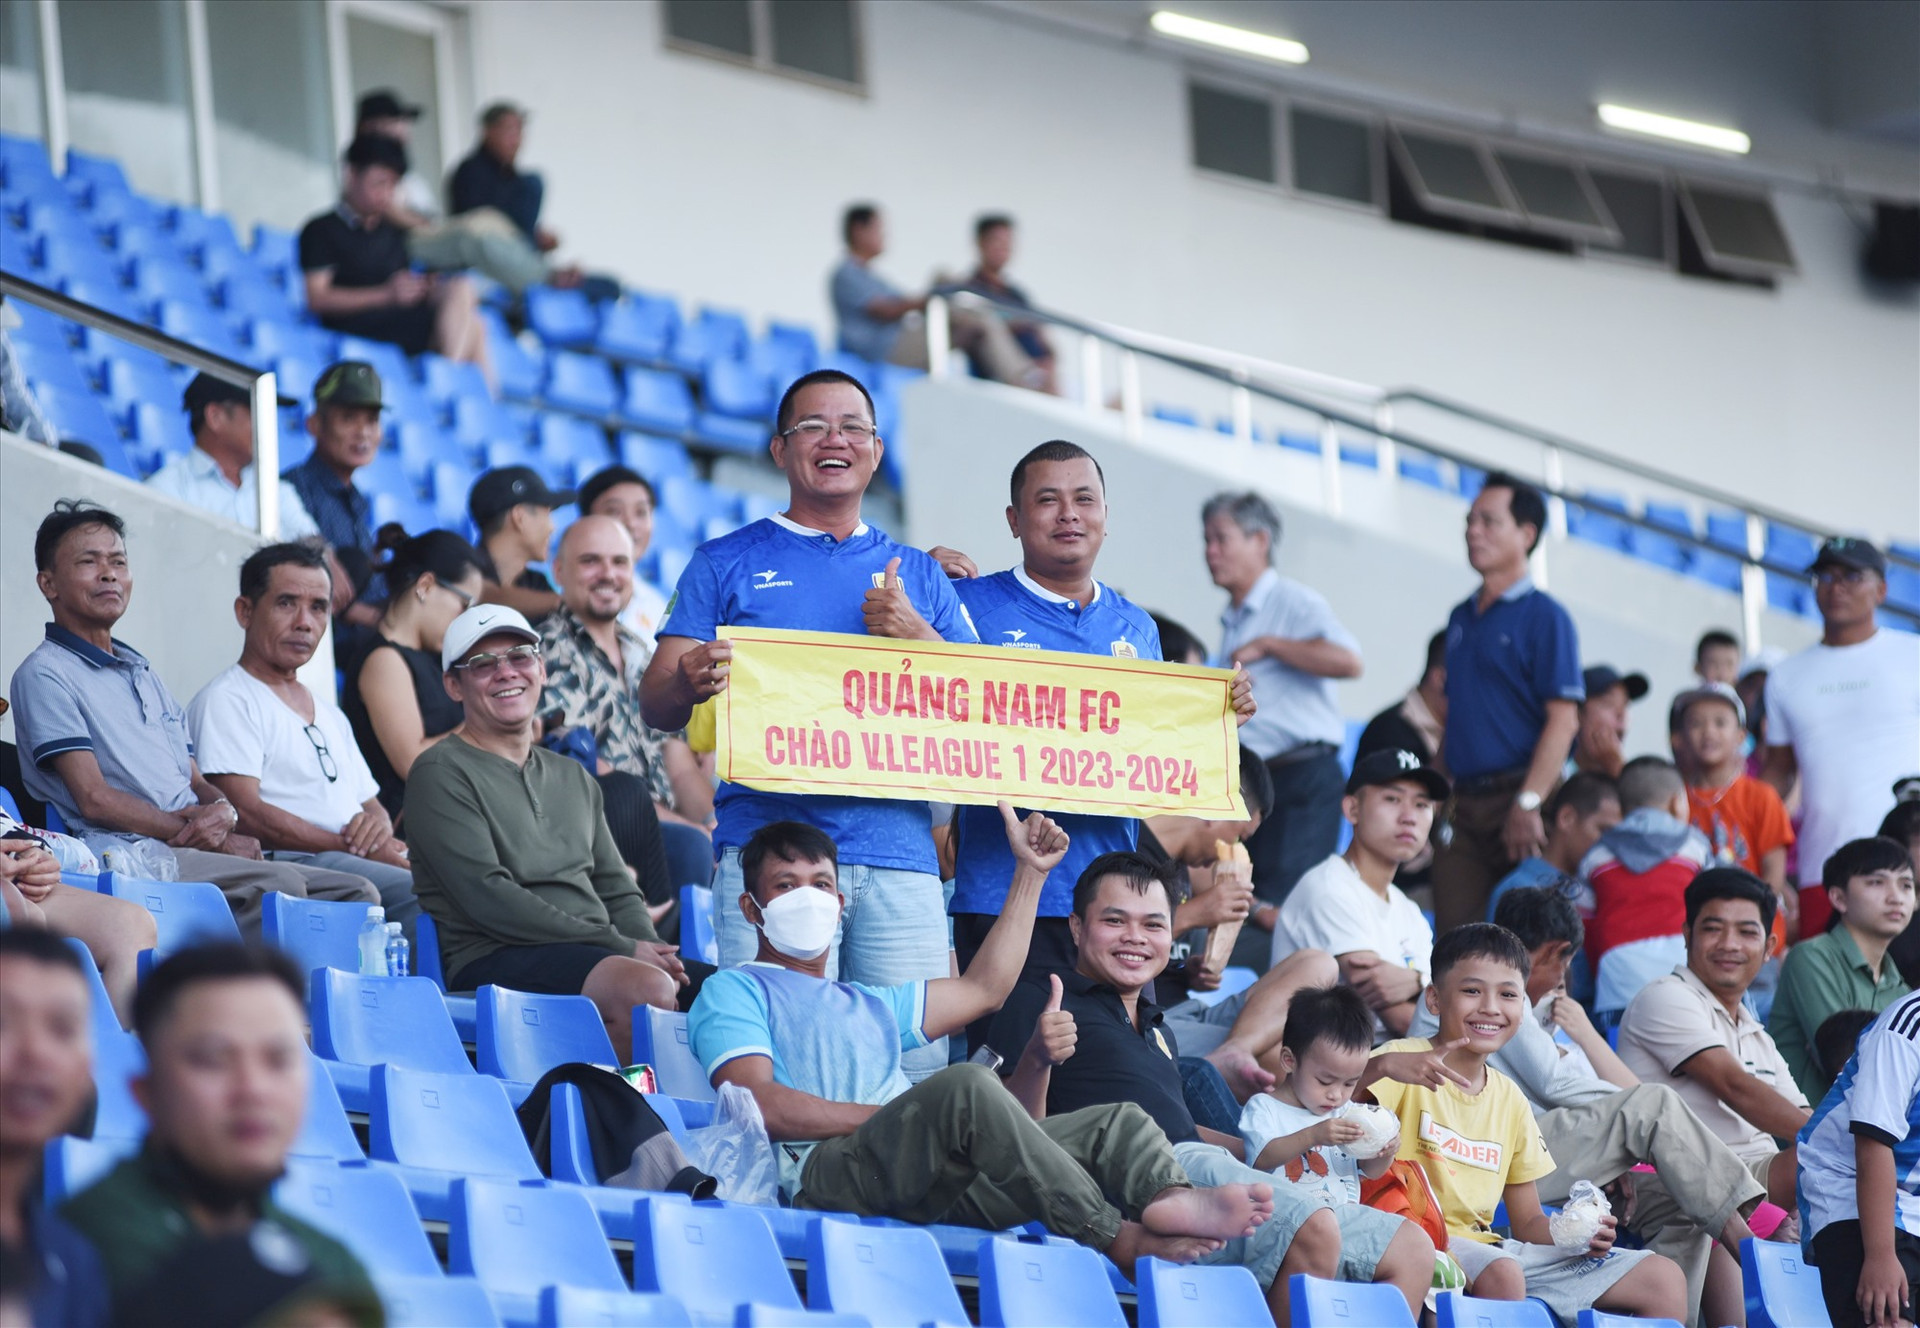 Phạm Anh Khoa với tấm băng rôn cầm tay “Quảng Nam FC chào V-League 2023-2024” trên khán đài A sân Hòa Xuân. Ảnh: A.SẮC